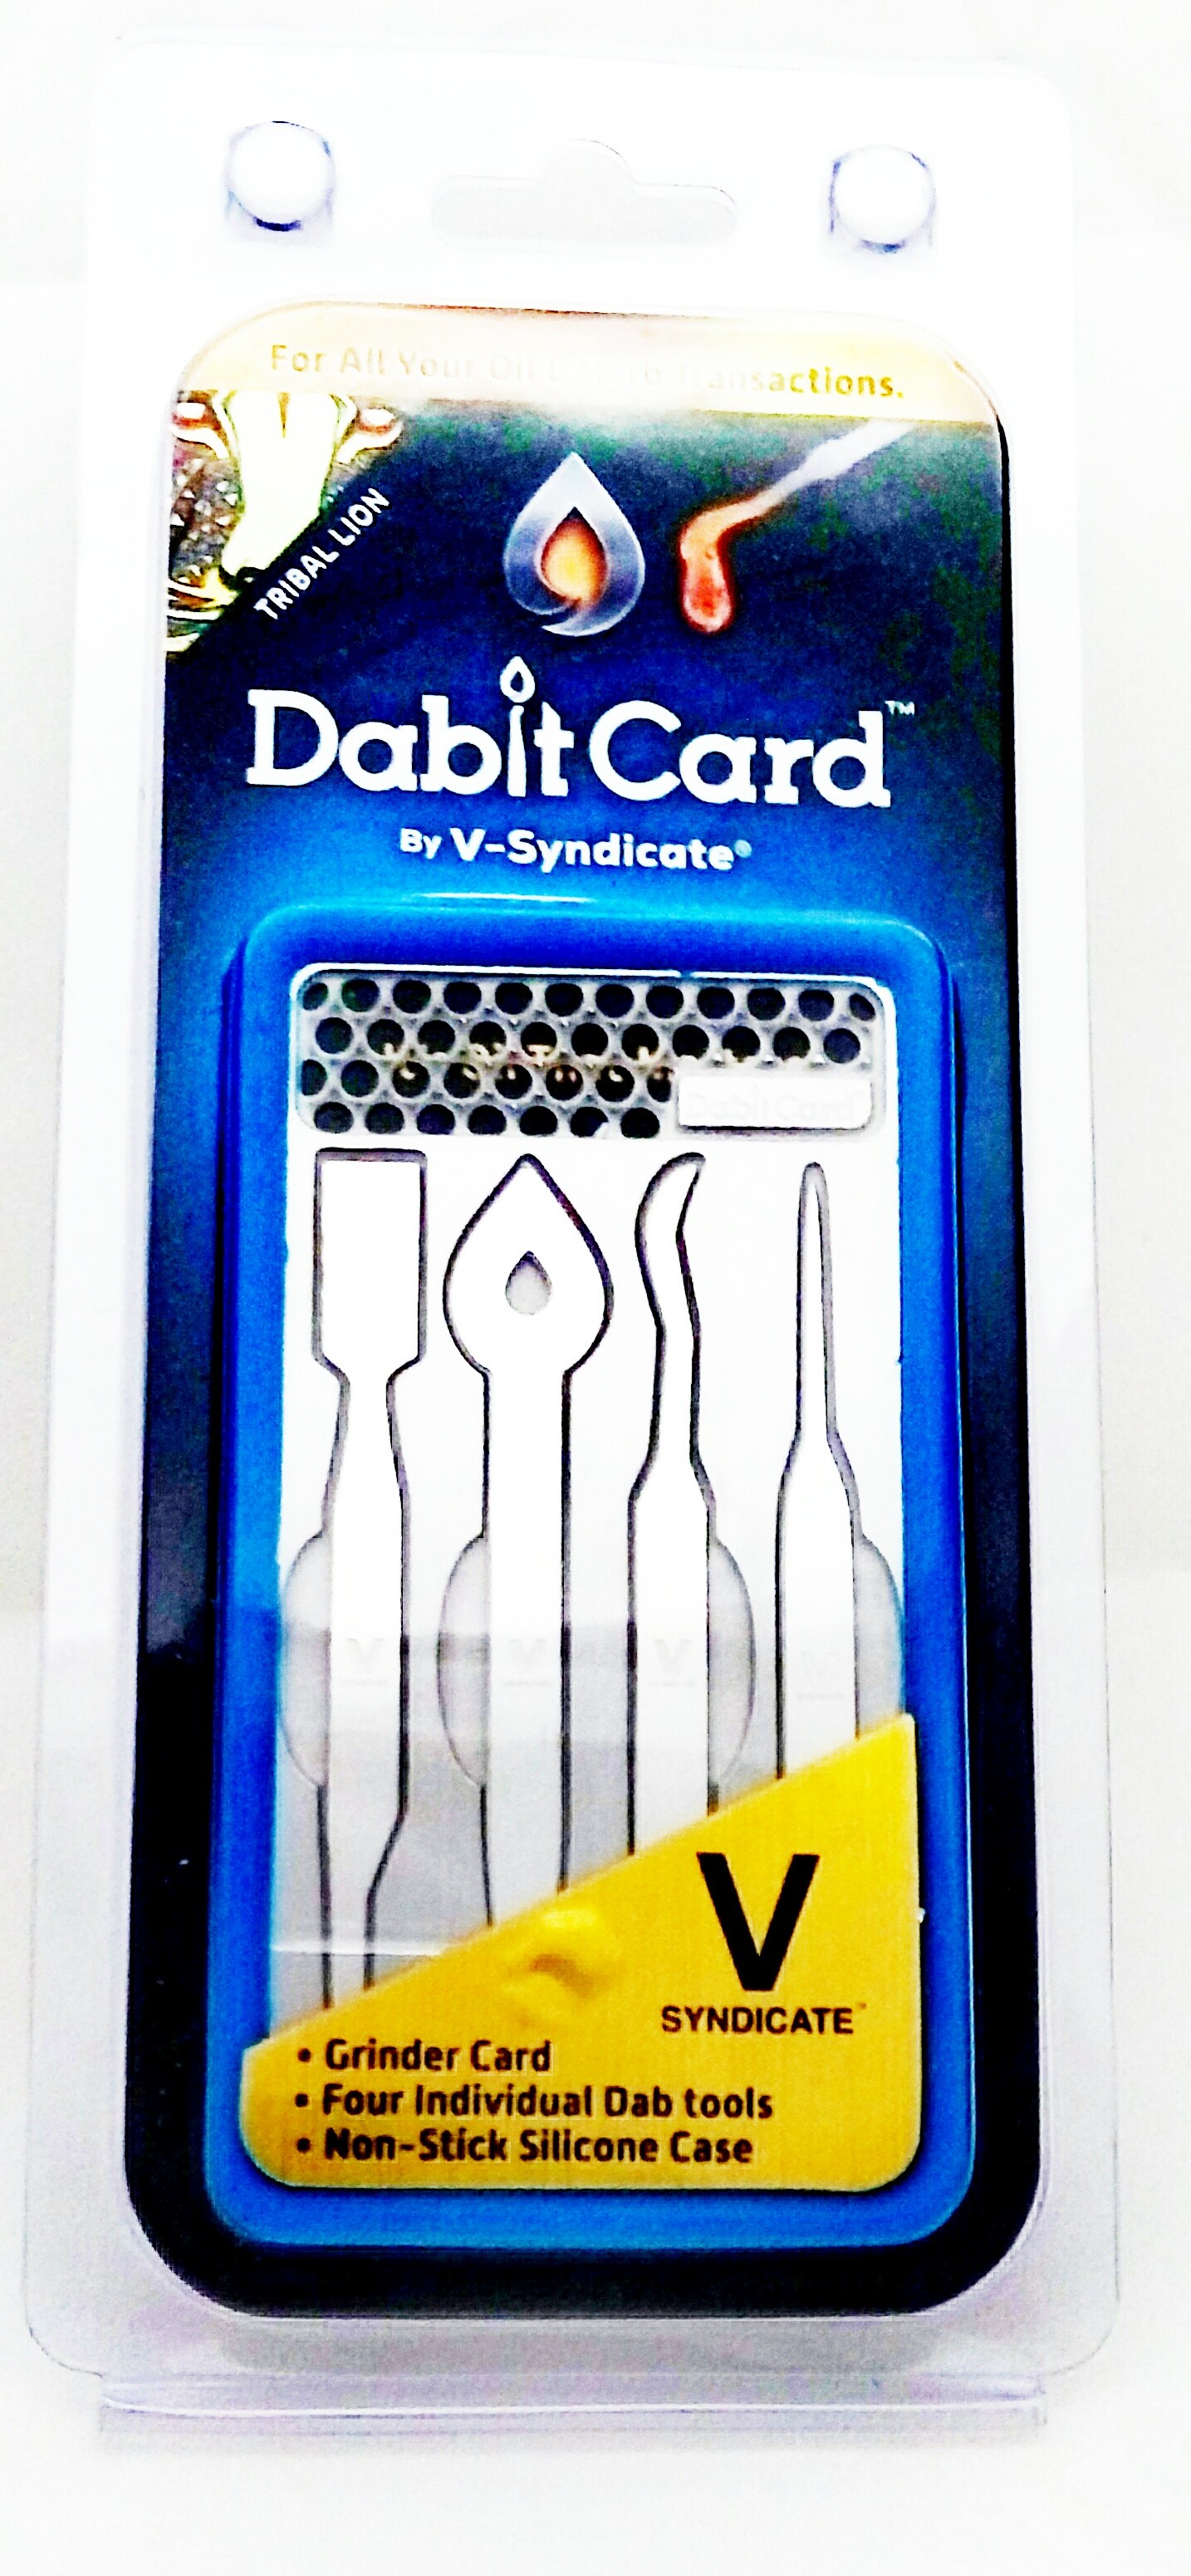 Tarjeta Dabit Card VsyTarjeta Dabit Card Vsyndicate - Modelo Lion (Dabber portátil) 2